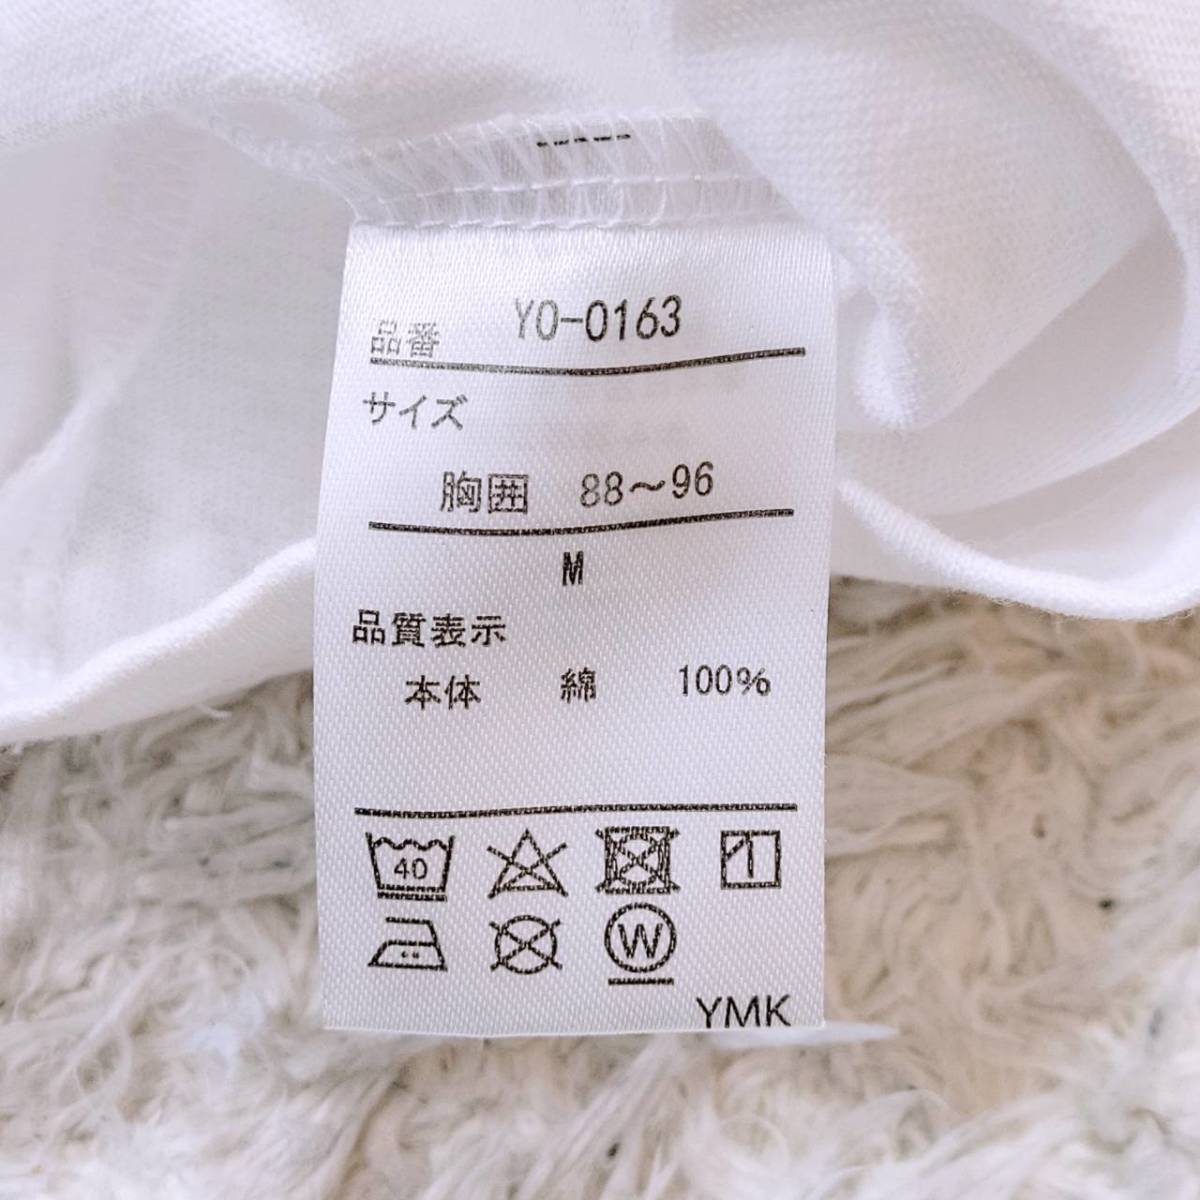 メンズM TOKYO2020 半袖Tシャツ 白 ホワイト カジュアル オリンピック イラスト ロゴ 東京2020 【25930】